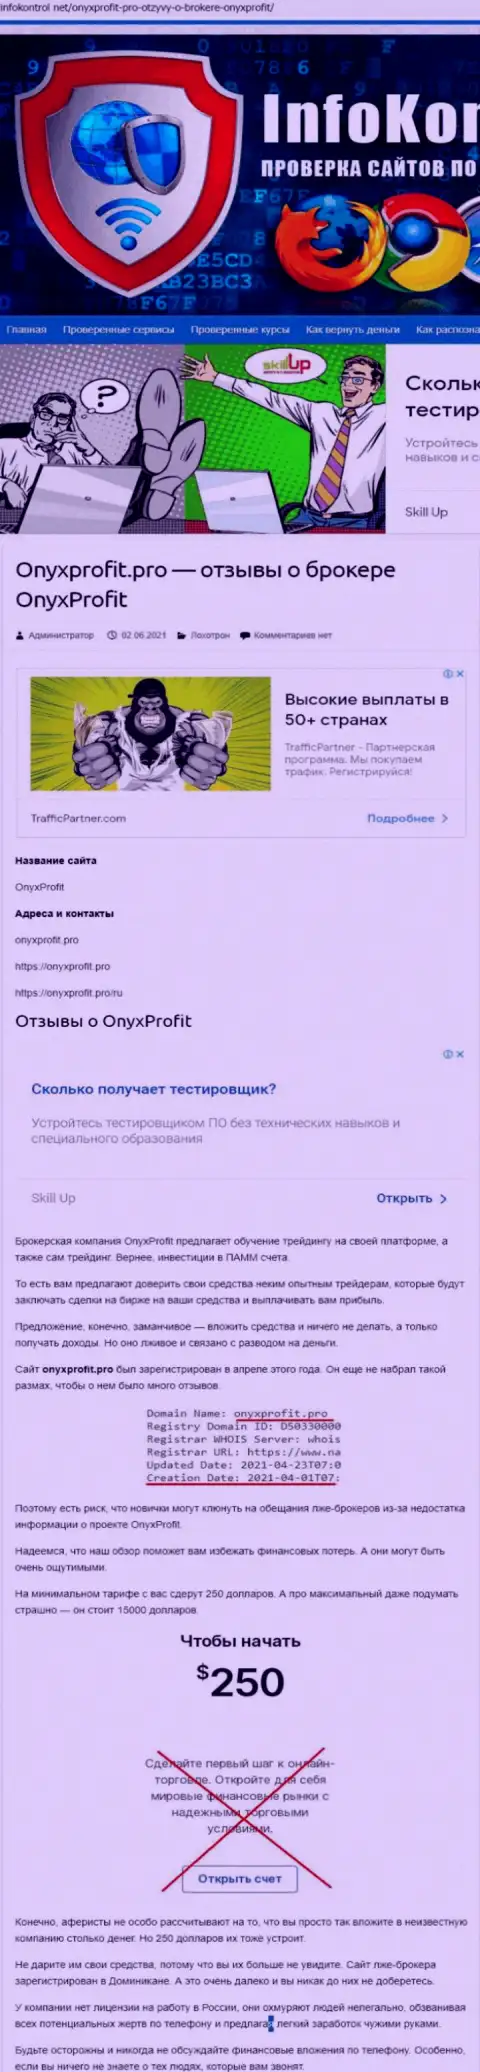 Onyx Profit - это очередной разводняк, вестись на который весьма опасно (обзор деяний организации)